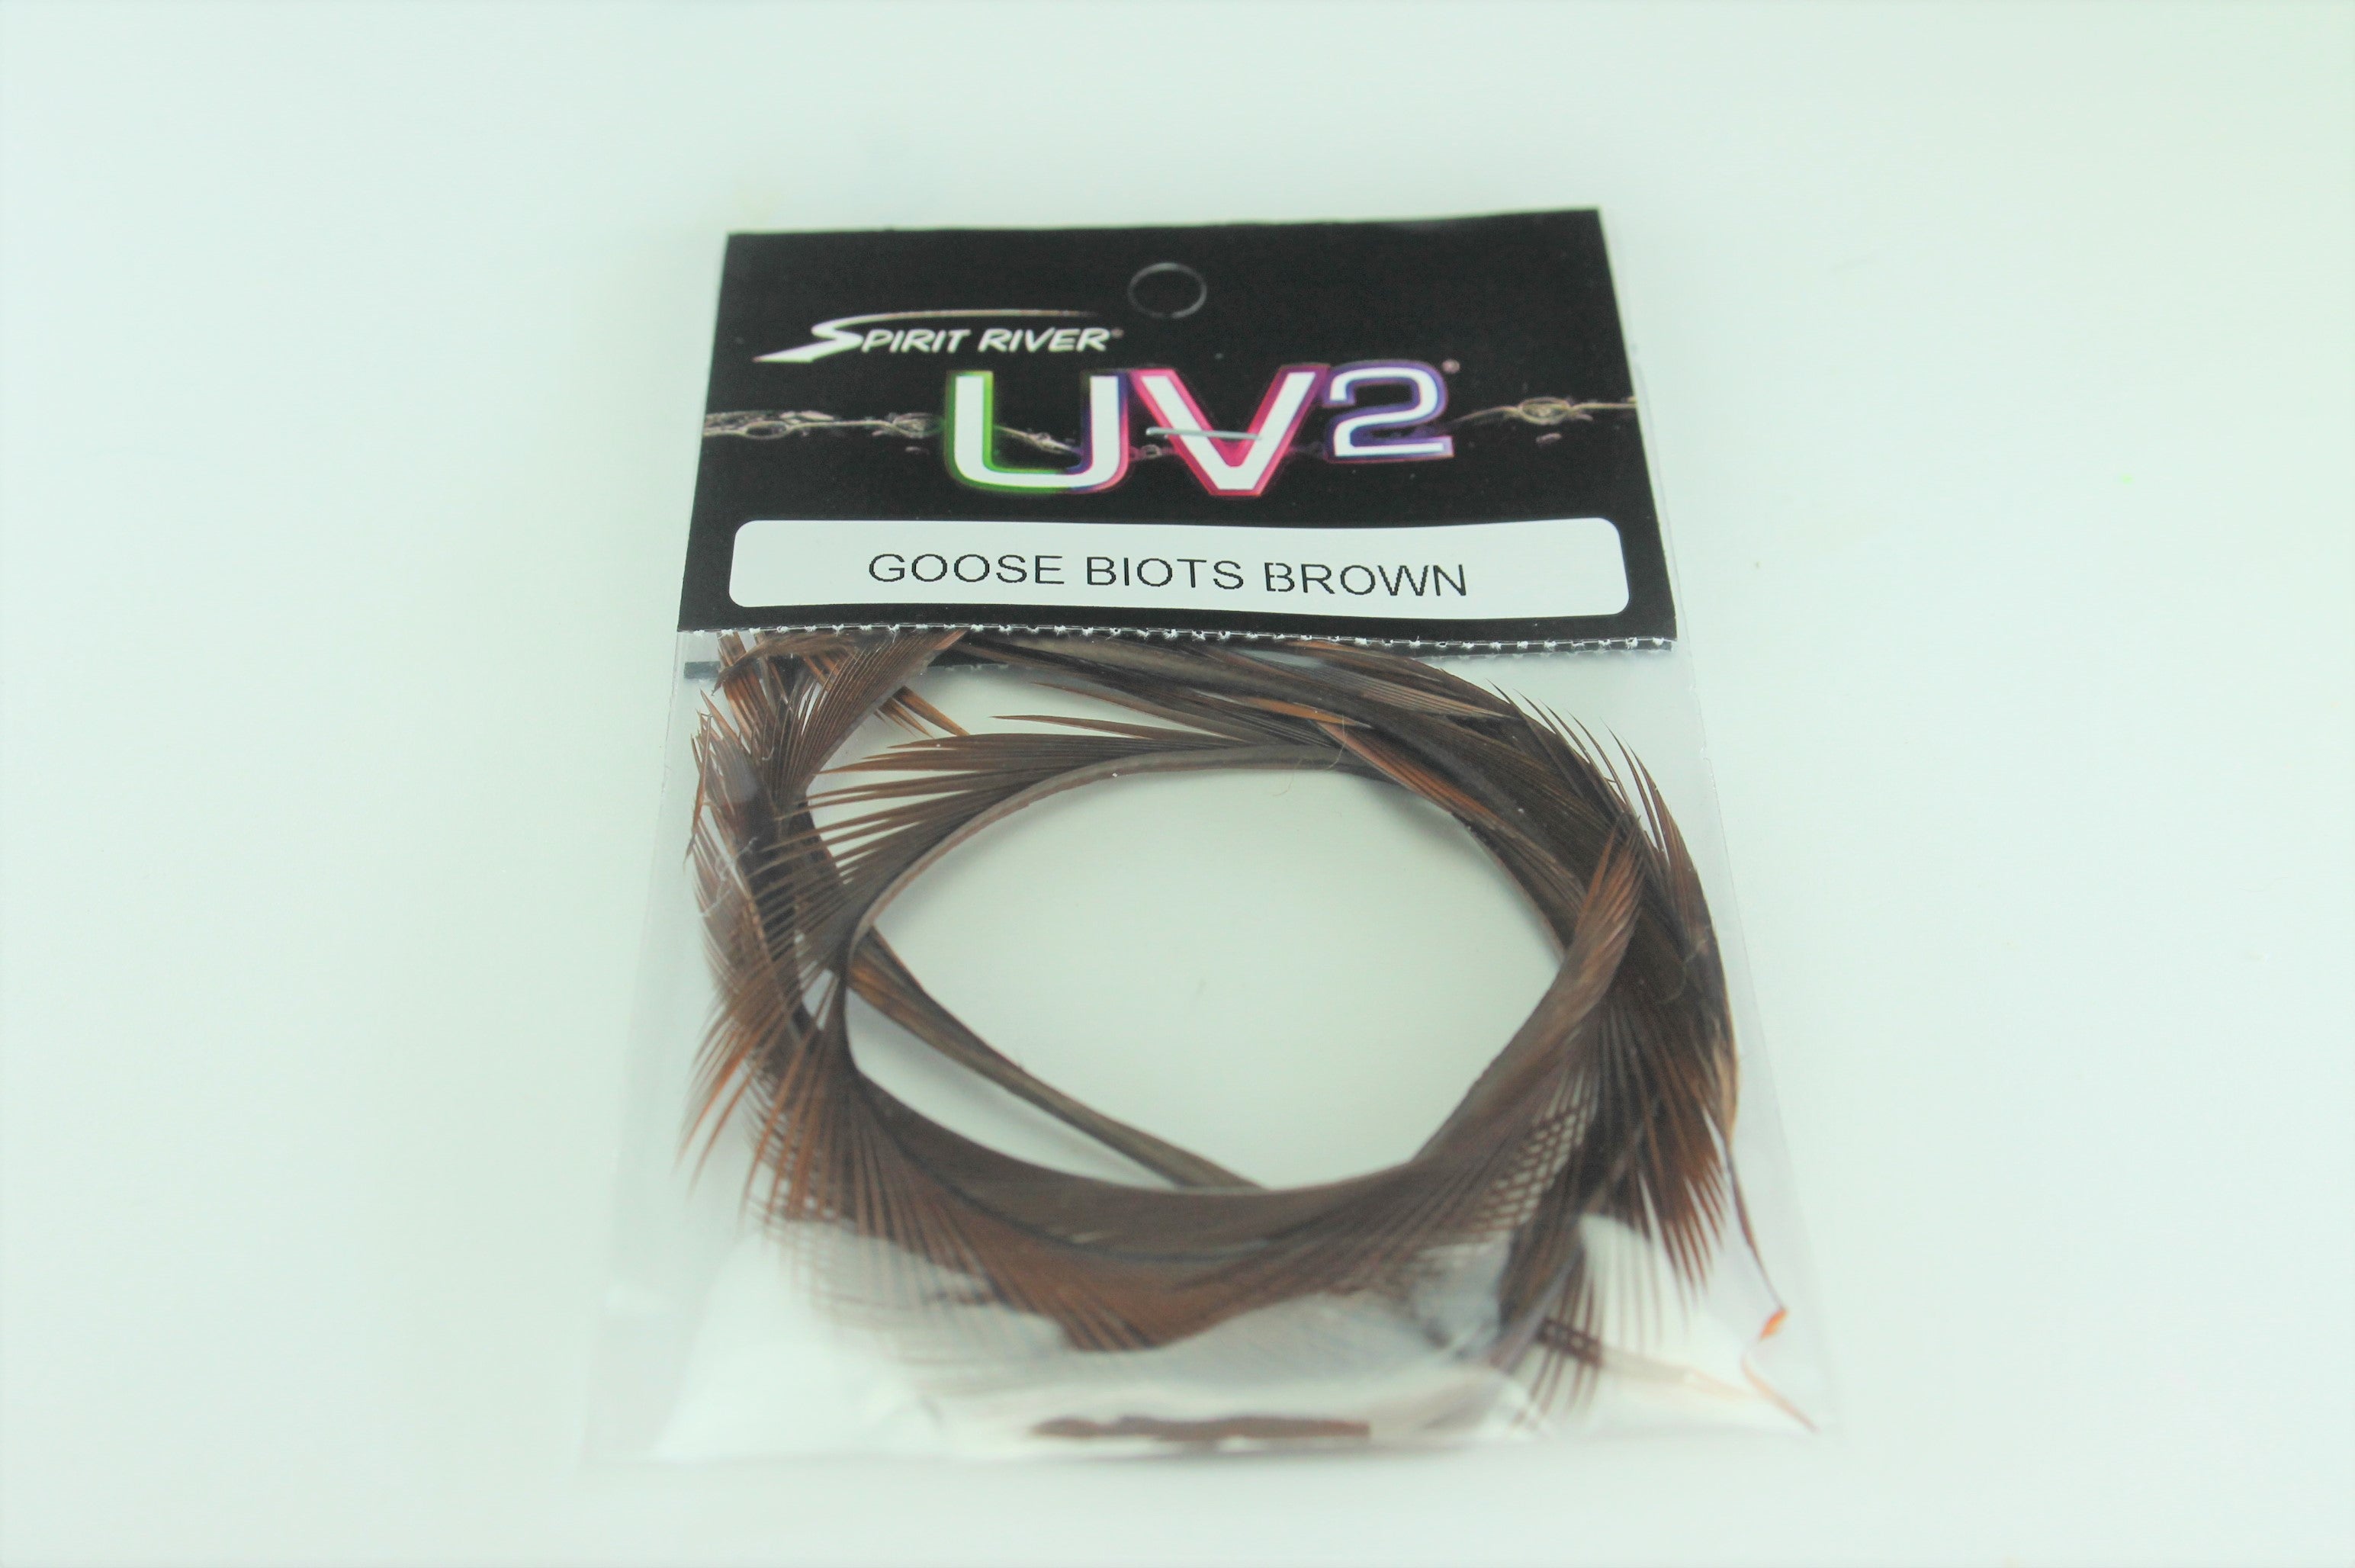 UV2 Goose Biots